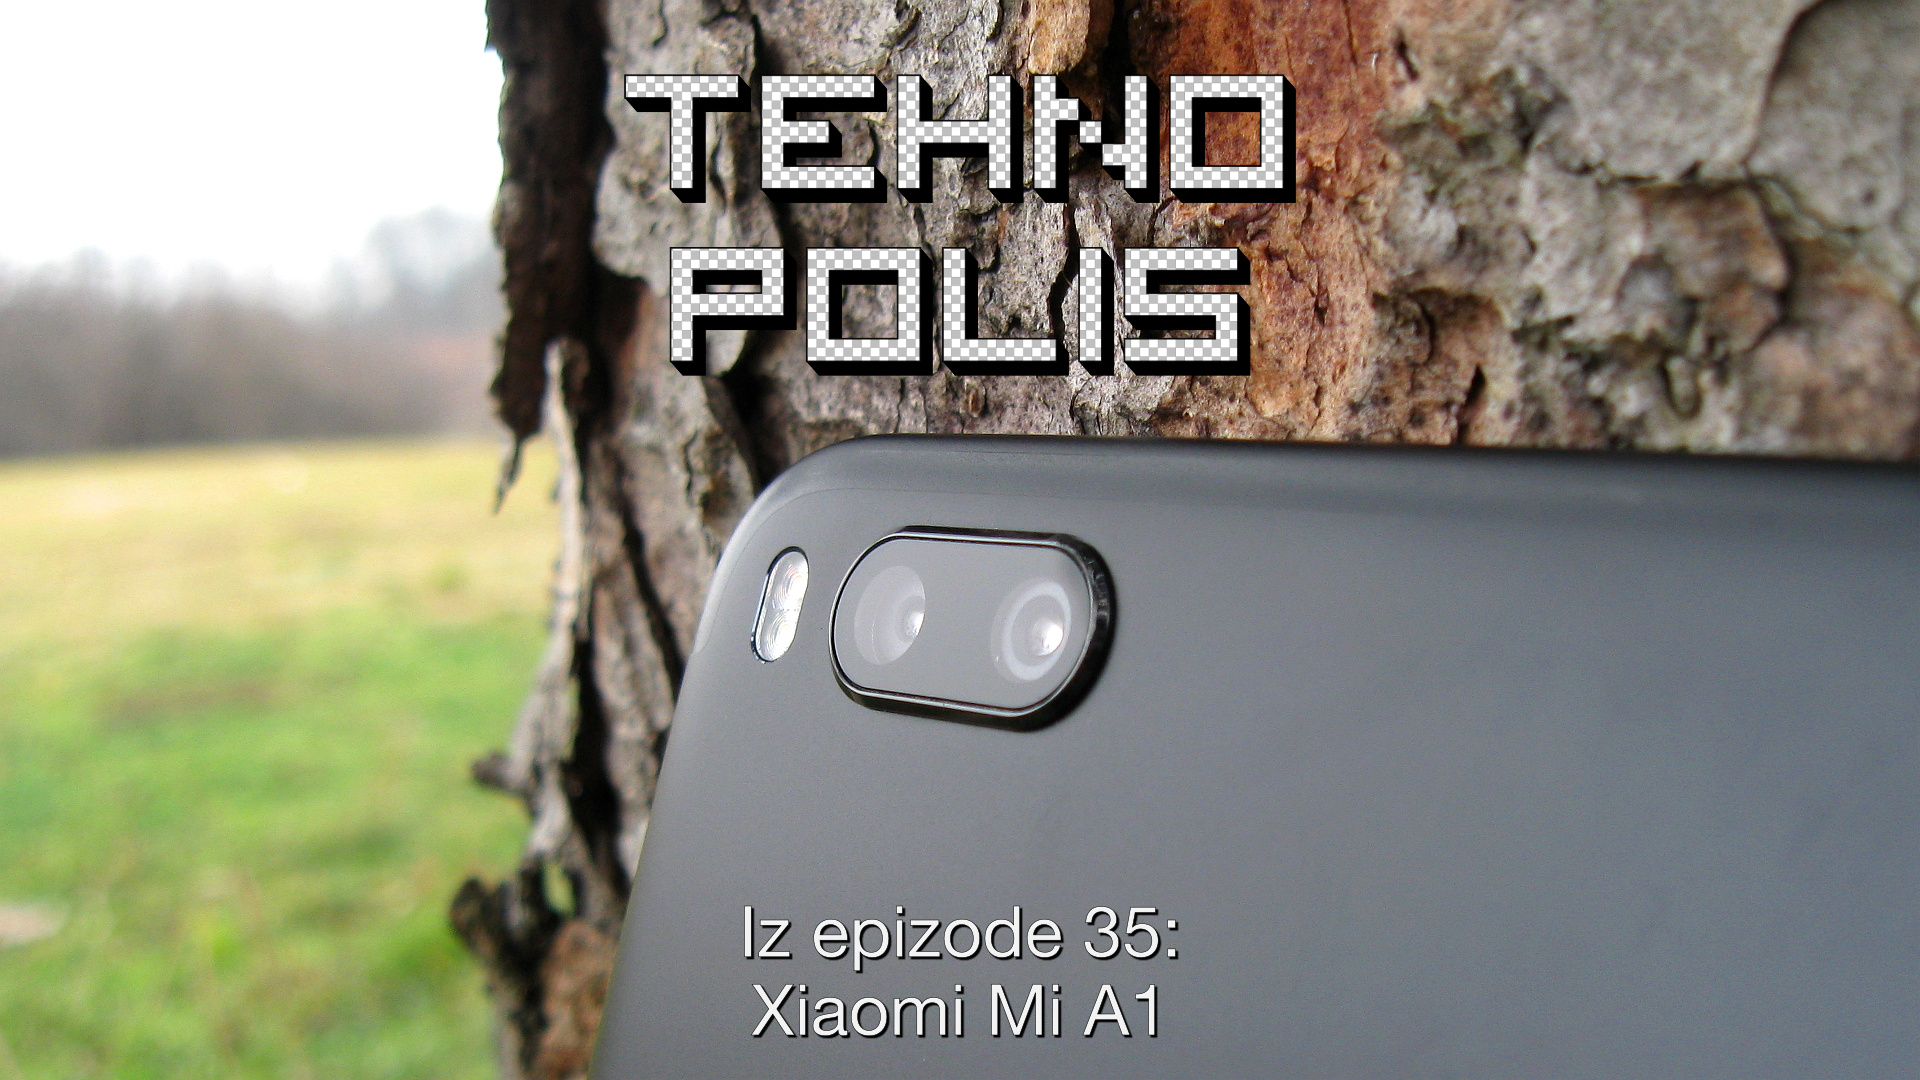 Iz E35: Xiaomi Mi A1